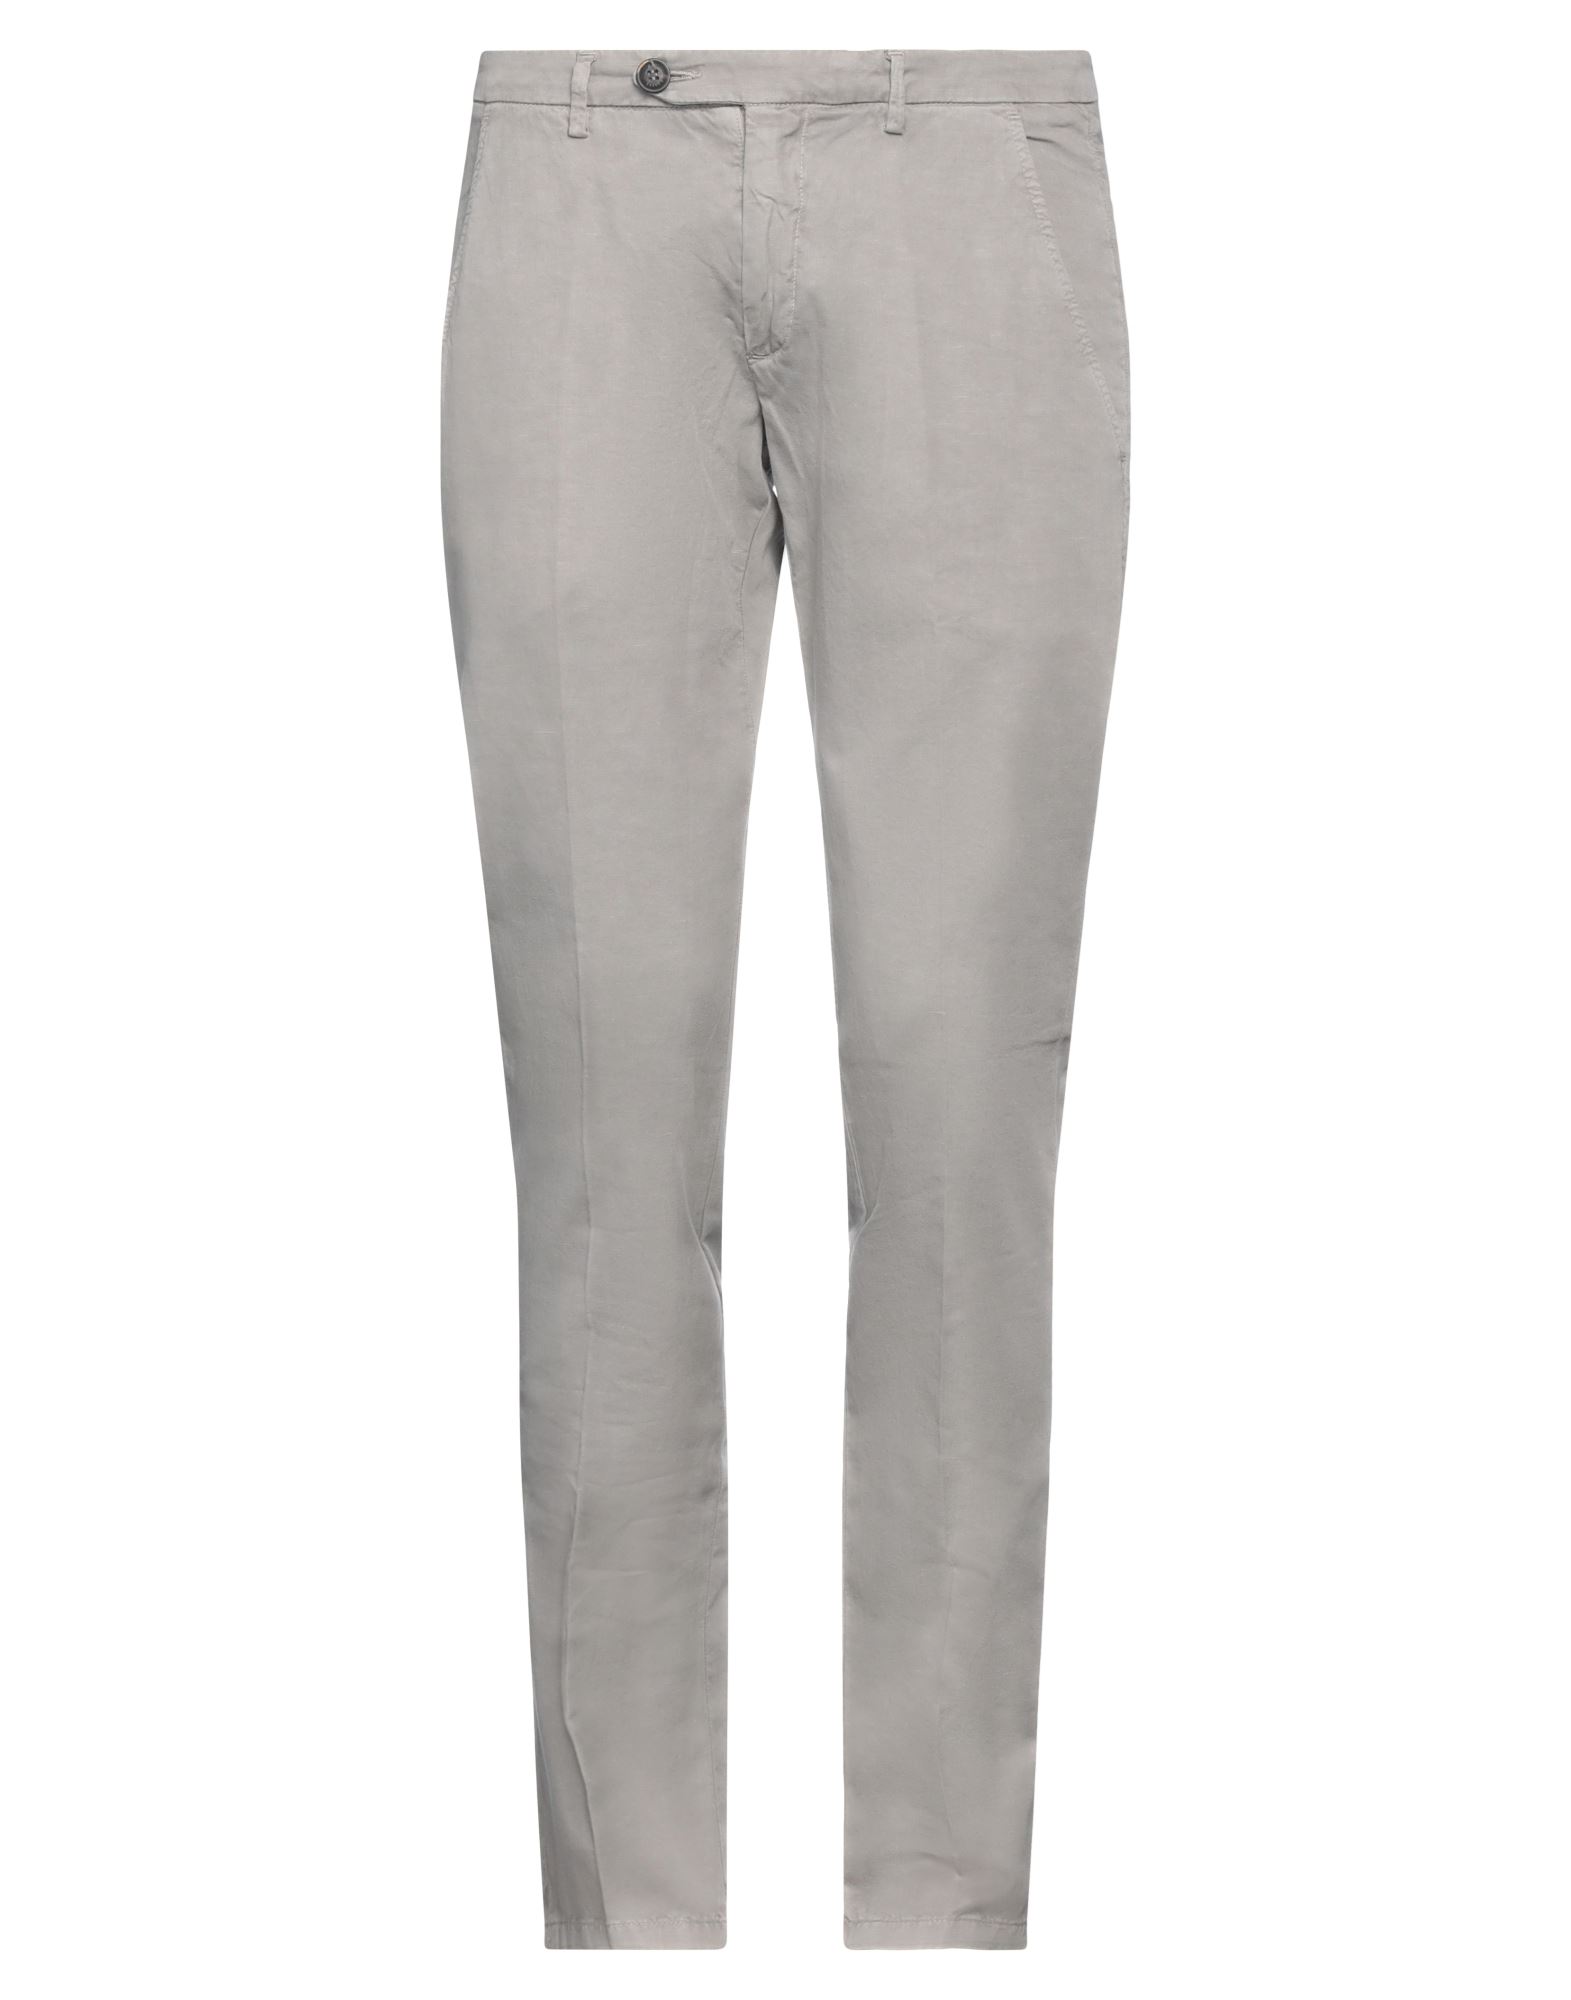 Shop Roy Rogers Roÿ Roger's Man Pants Grey Size 29 Cotton, Linen, Rubber